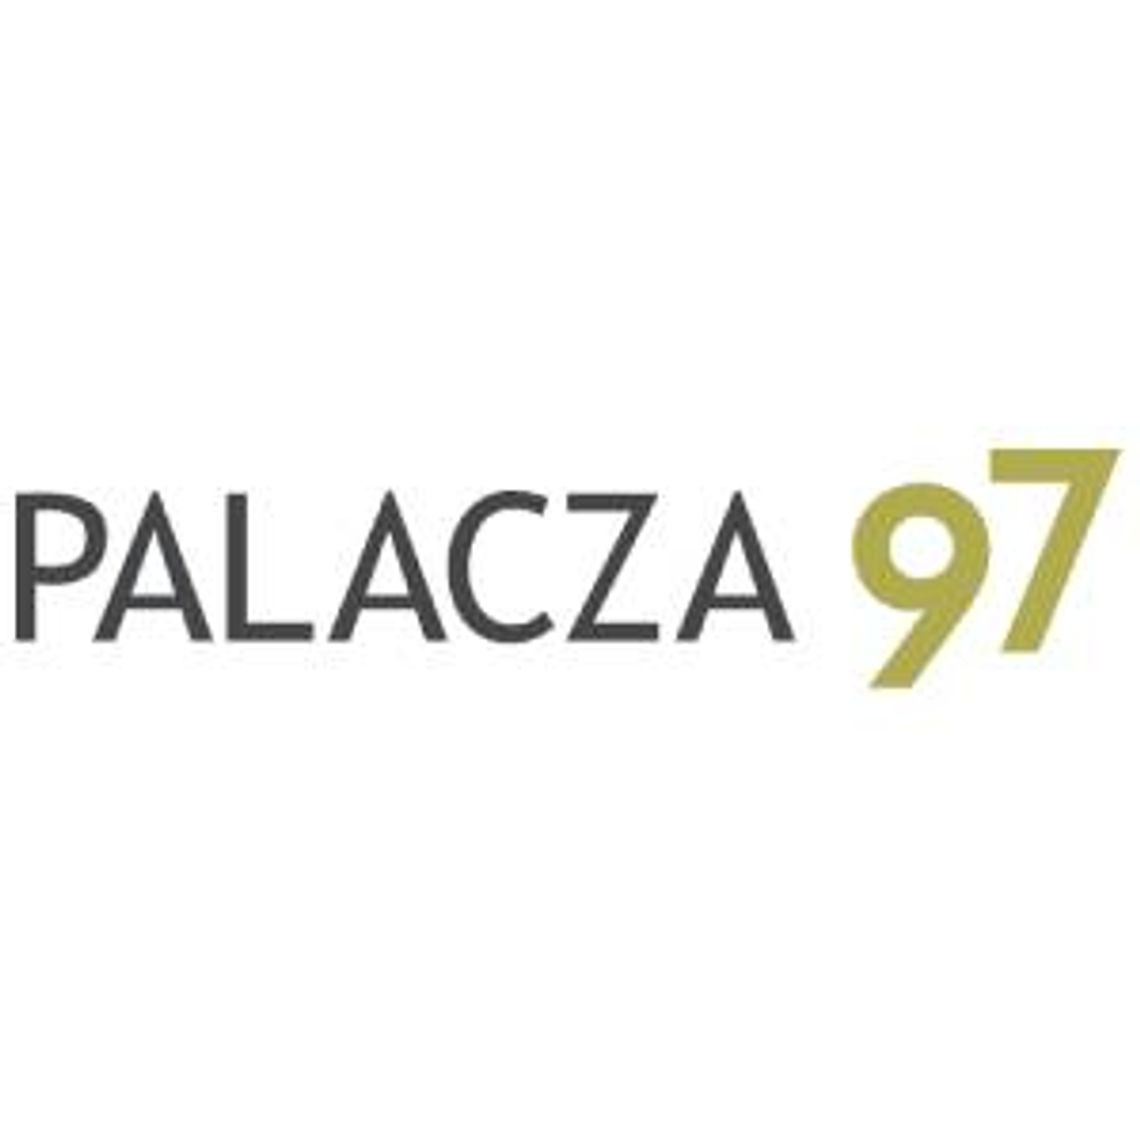 Mieszkanie dwupokojowe Poznań - Palacza 97